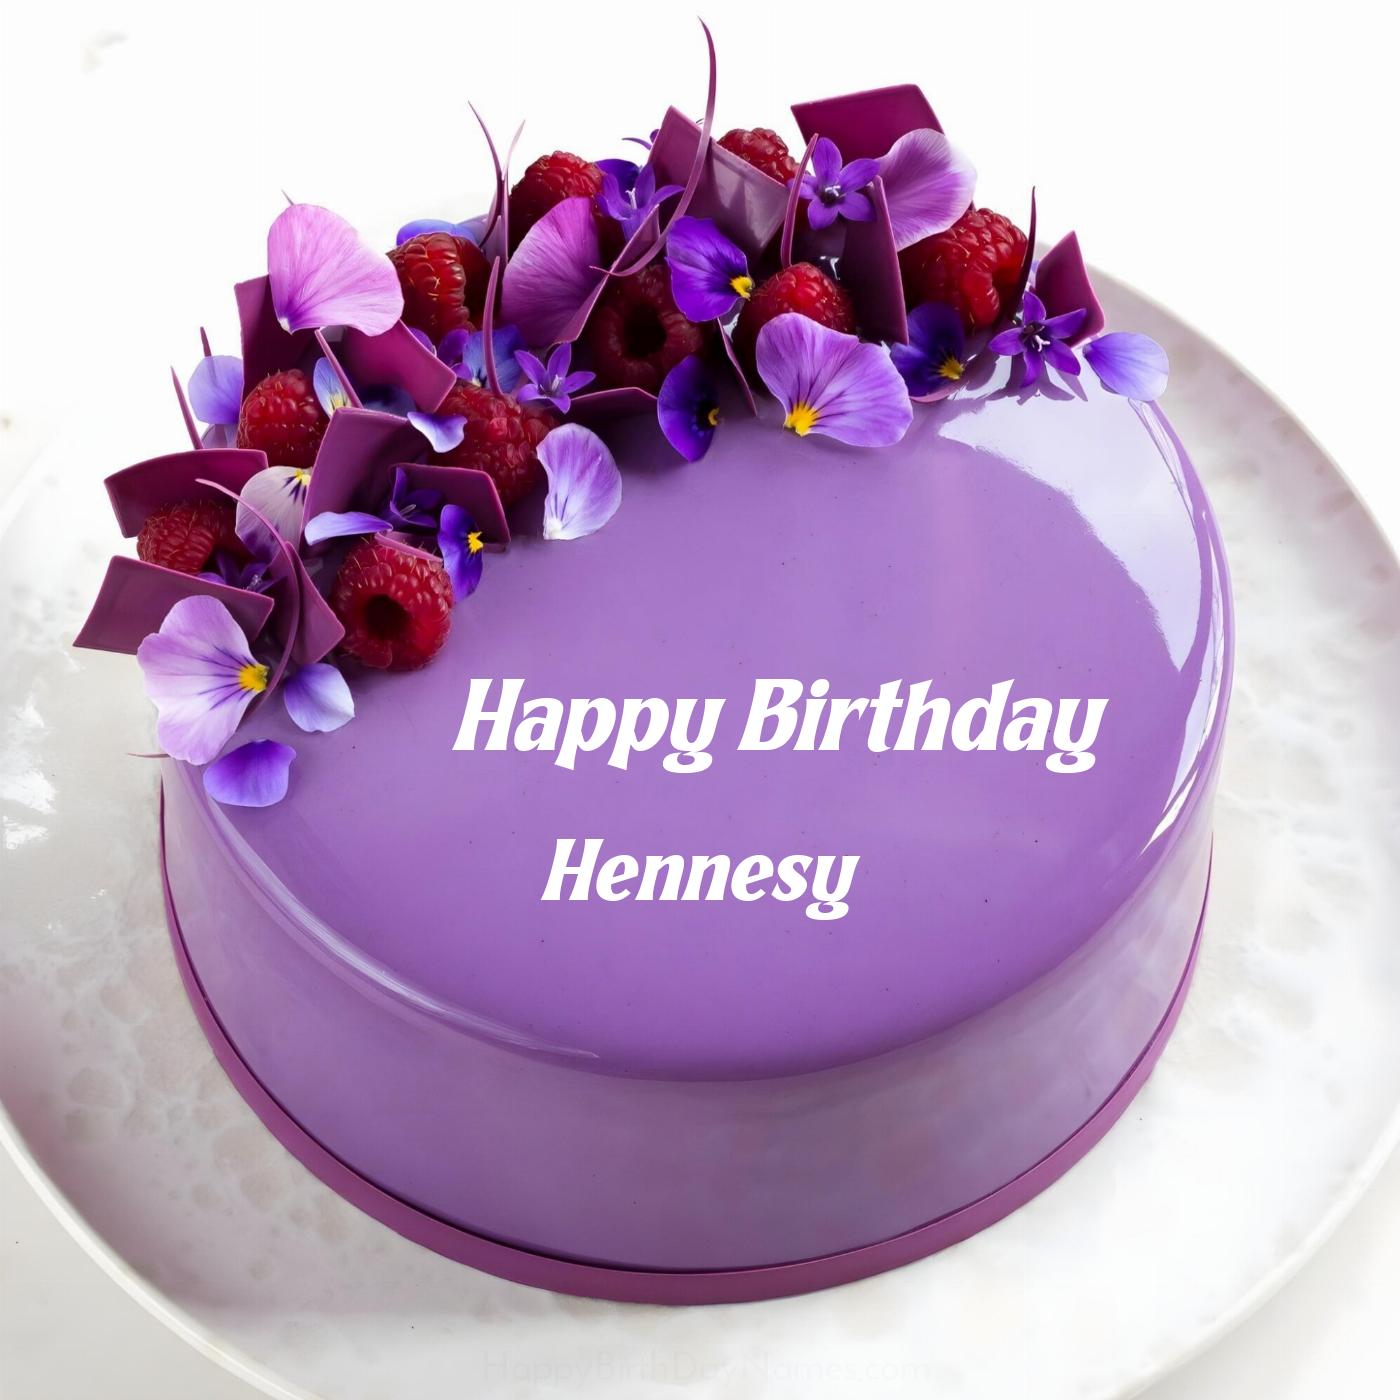 Happy Birthday Hennesy Violet Raspberry Cake